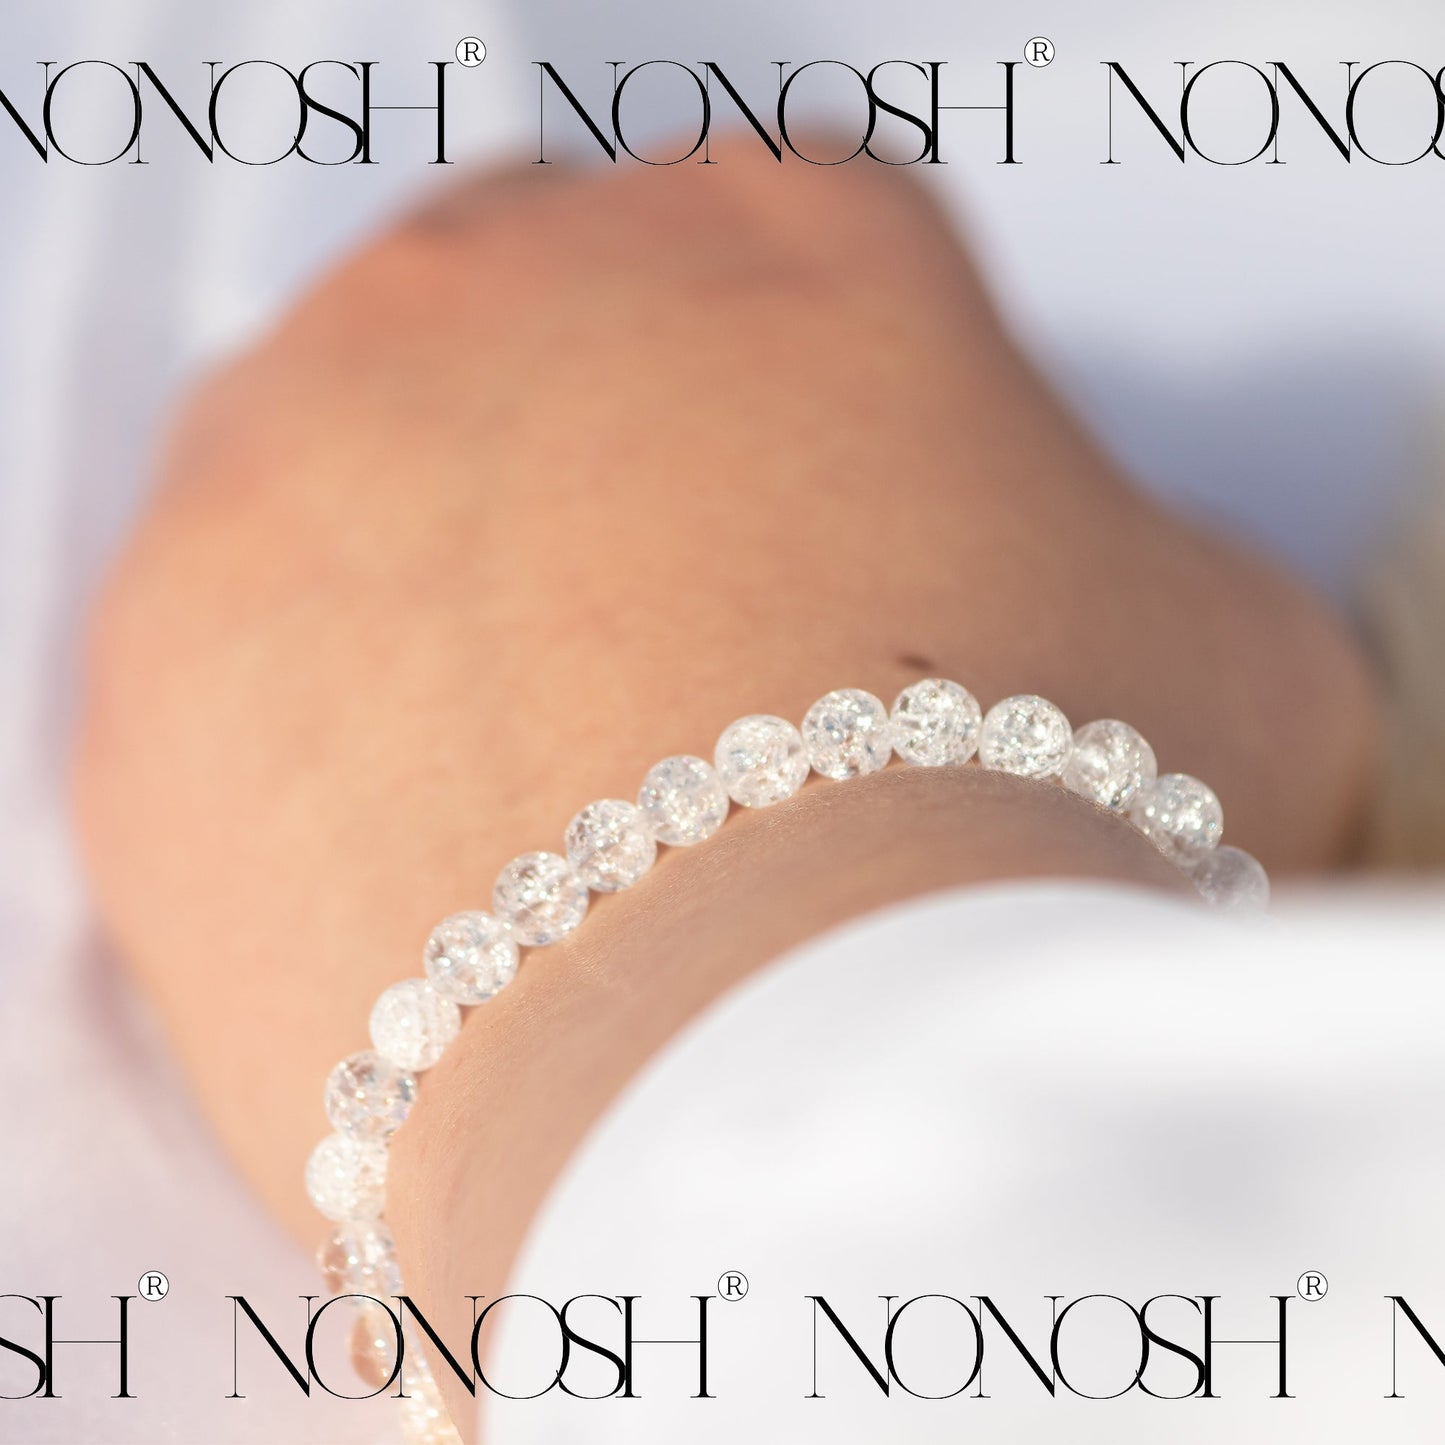 Bergkristall Perlenarmband Magnetverschluss - NONOSH